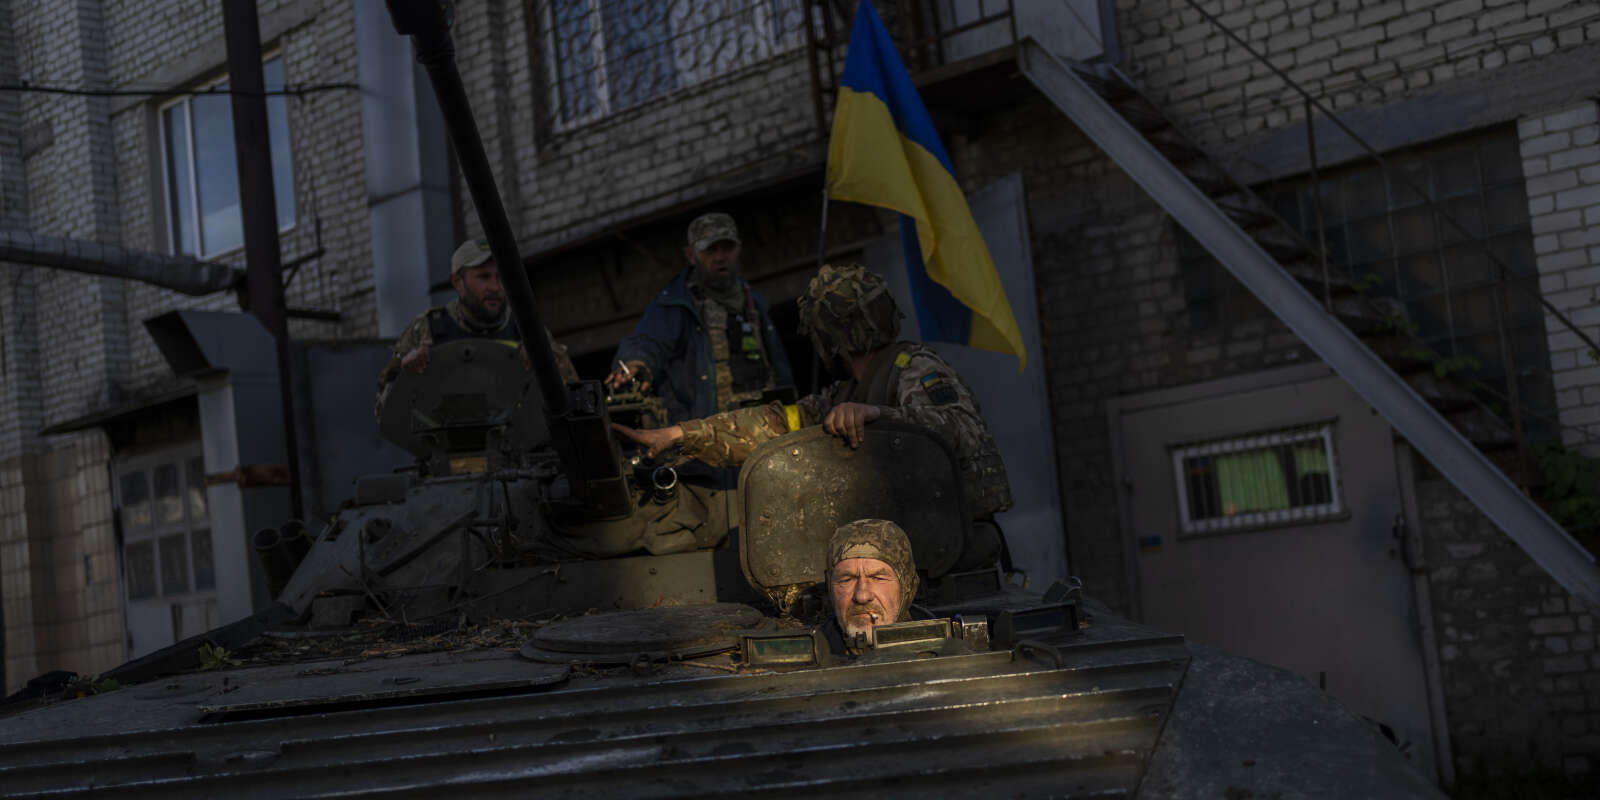 Des militaires ukrainiens déplacent un BMP-2, un véhicule blindé russe, dans la région de Kharkiv, dans l’est de l’Ukraine. Le 29 mai 2022.